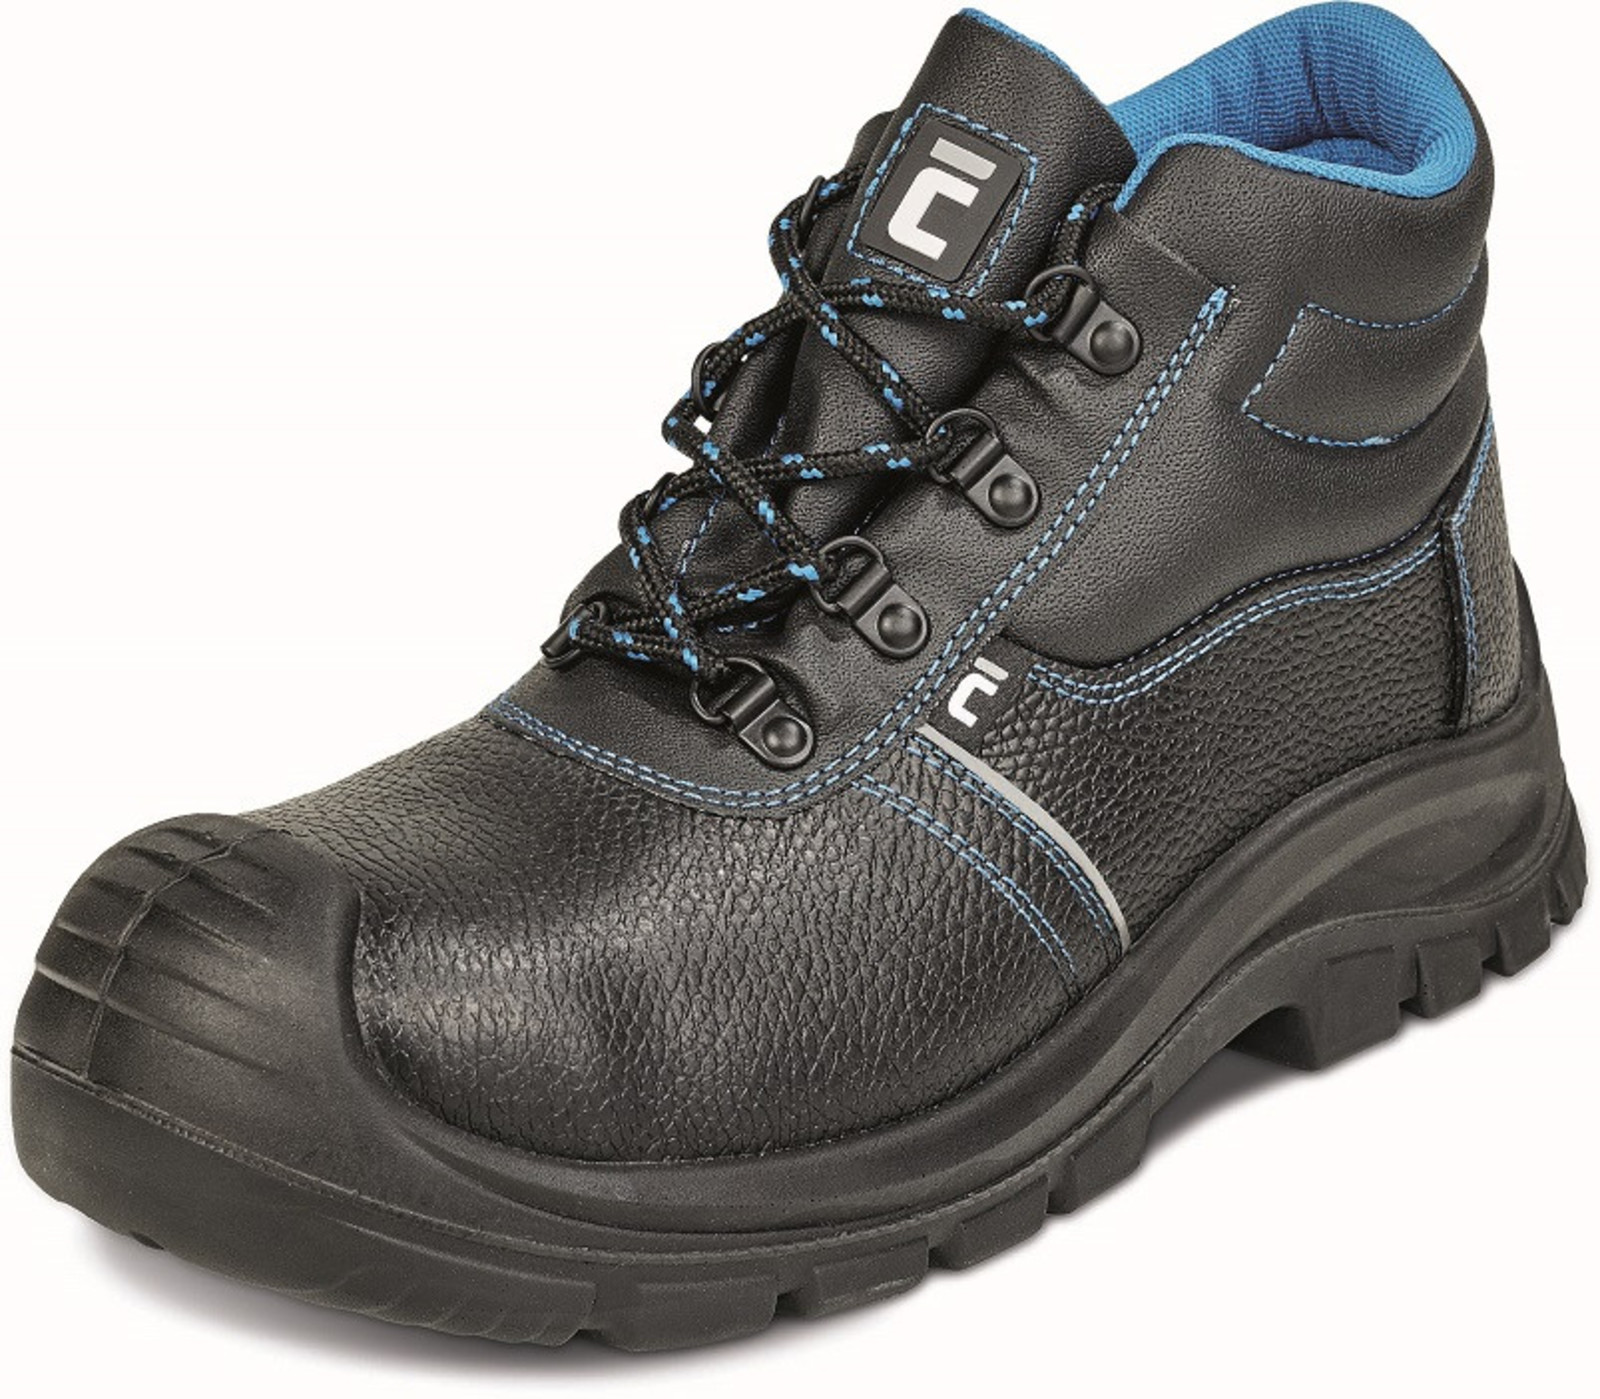 Bezpečnostná obuv Raven XT S3 - veľkosť: 47, farba: čierna